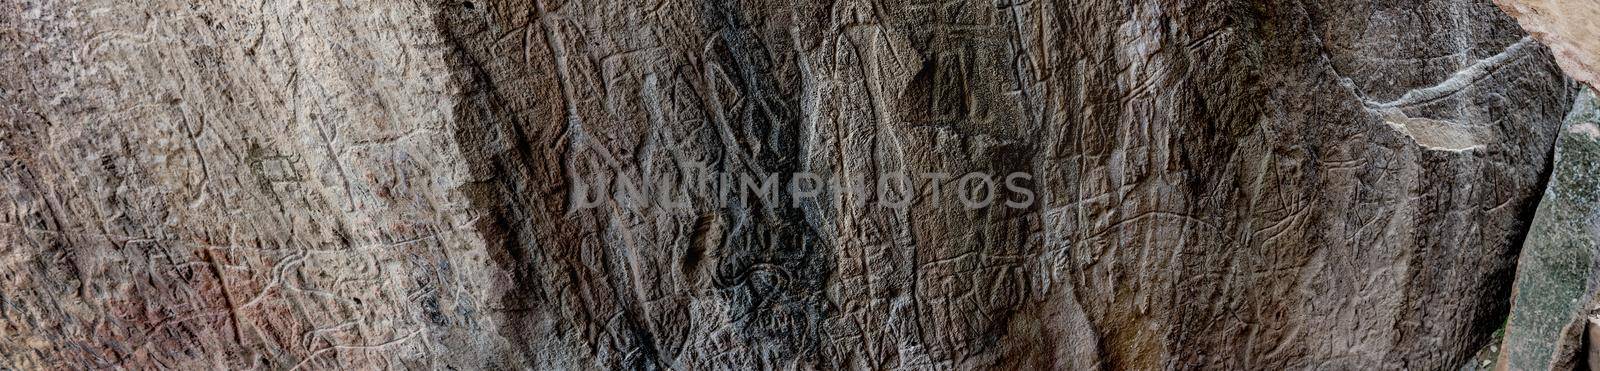 Petroglyph drawings in Gobustan park by tan4ikk1